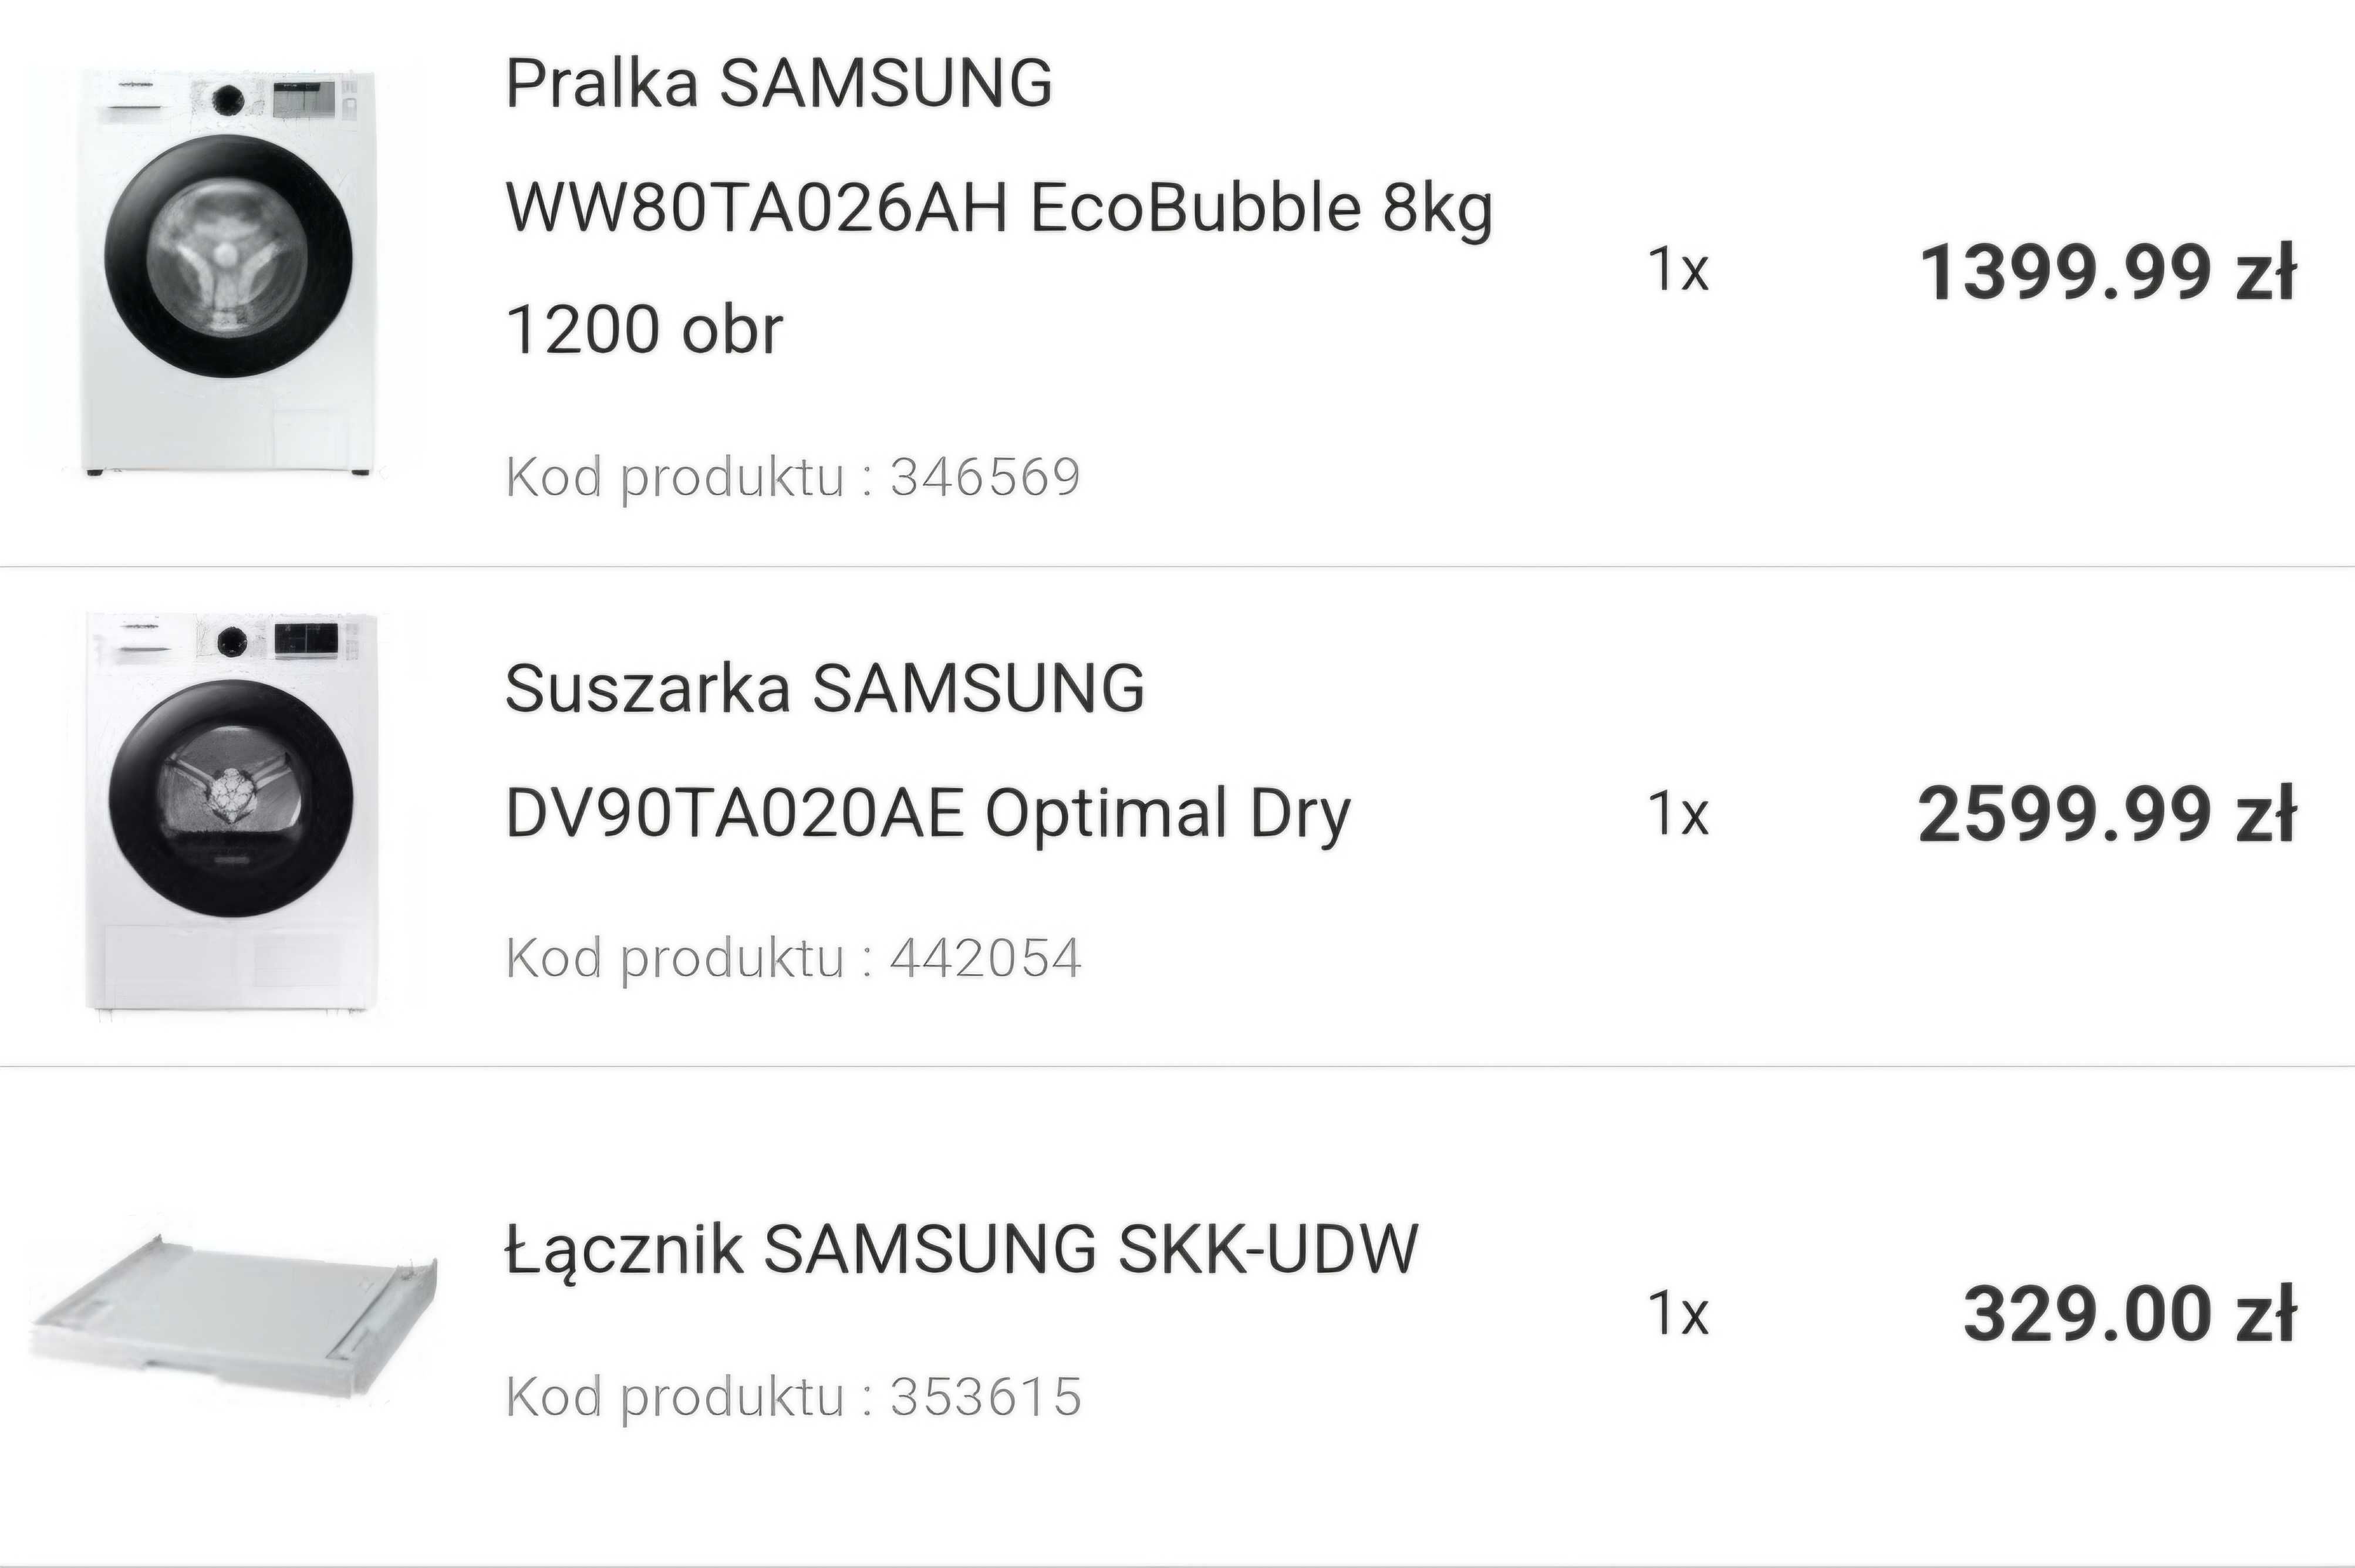 Pralka, łącznik i suszarka Samsung - nowe